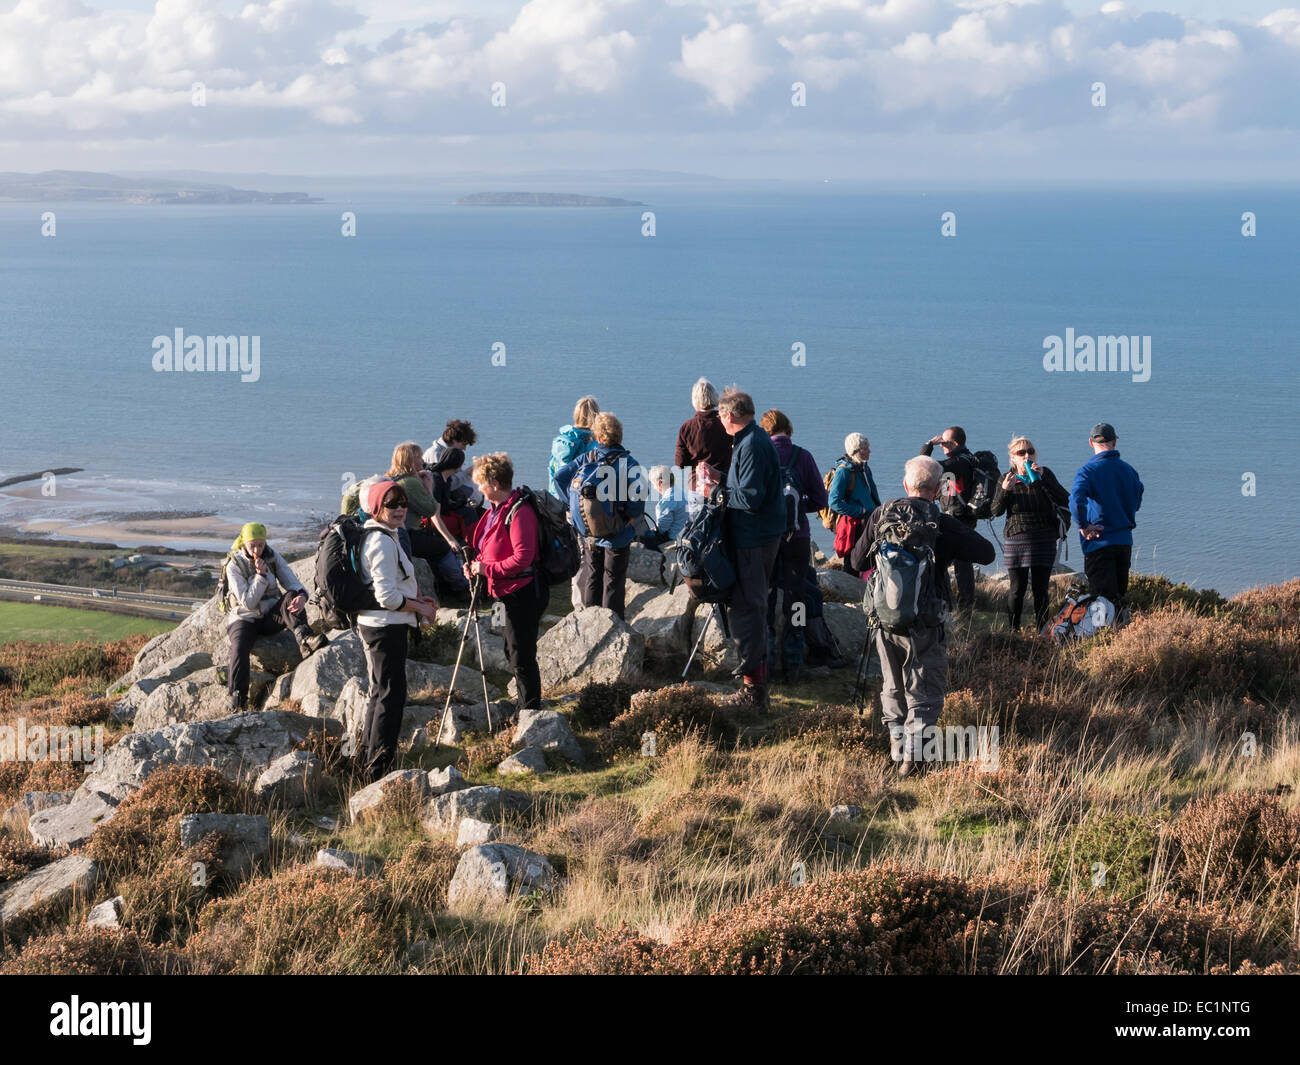 Groupe de randonneurs se reposant avec une vue sur la côte galloise et au-dessus d'Anglesey Penmaenmawr, Conwy, au nord du Pays de Galles, Royaume-Uni, Angleterre Banque D'Images